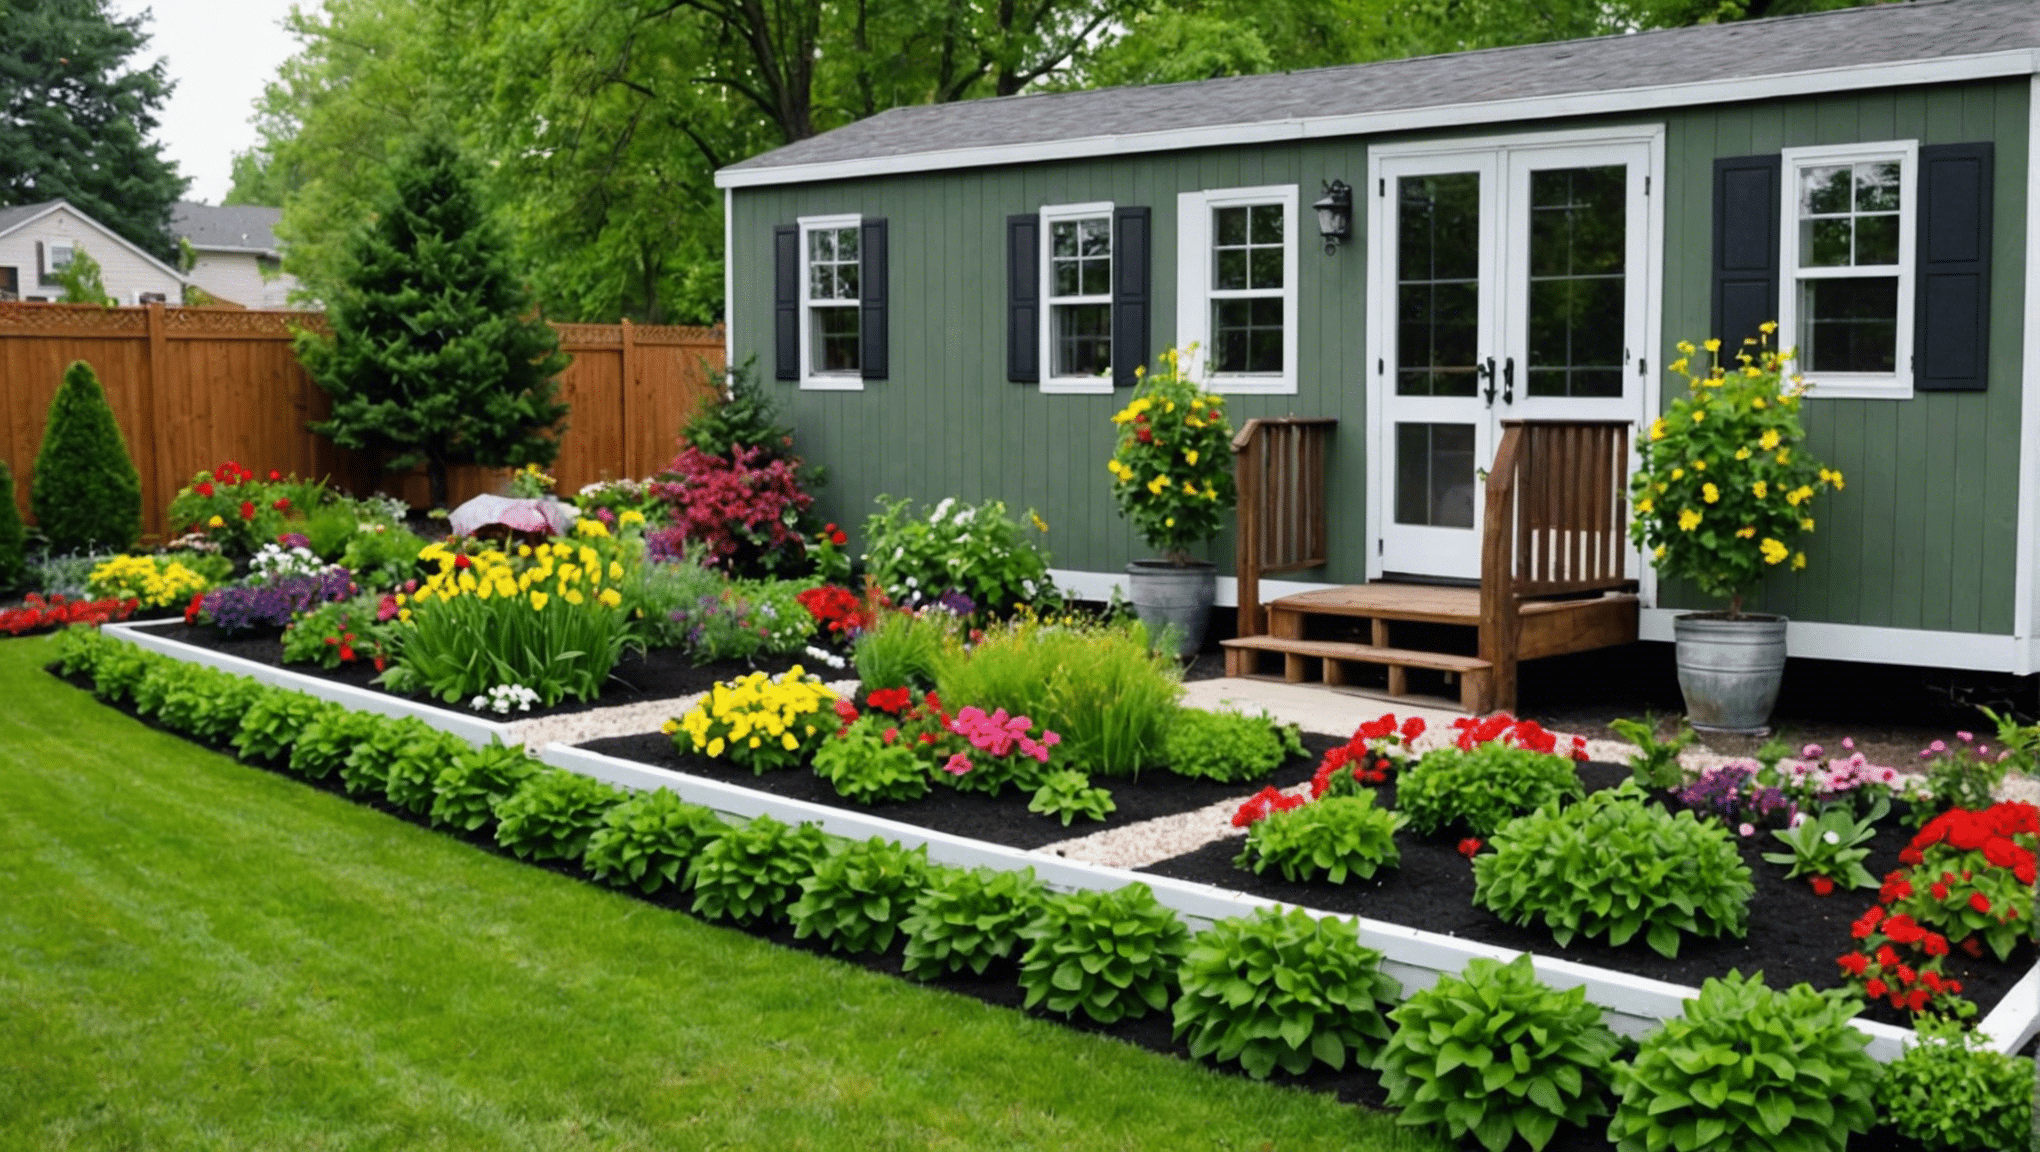 objevte kreativní nápady na začlenění zahrady do obytného prostoru vašeho mobilního domu s naším užitečným průvodcem.